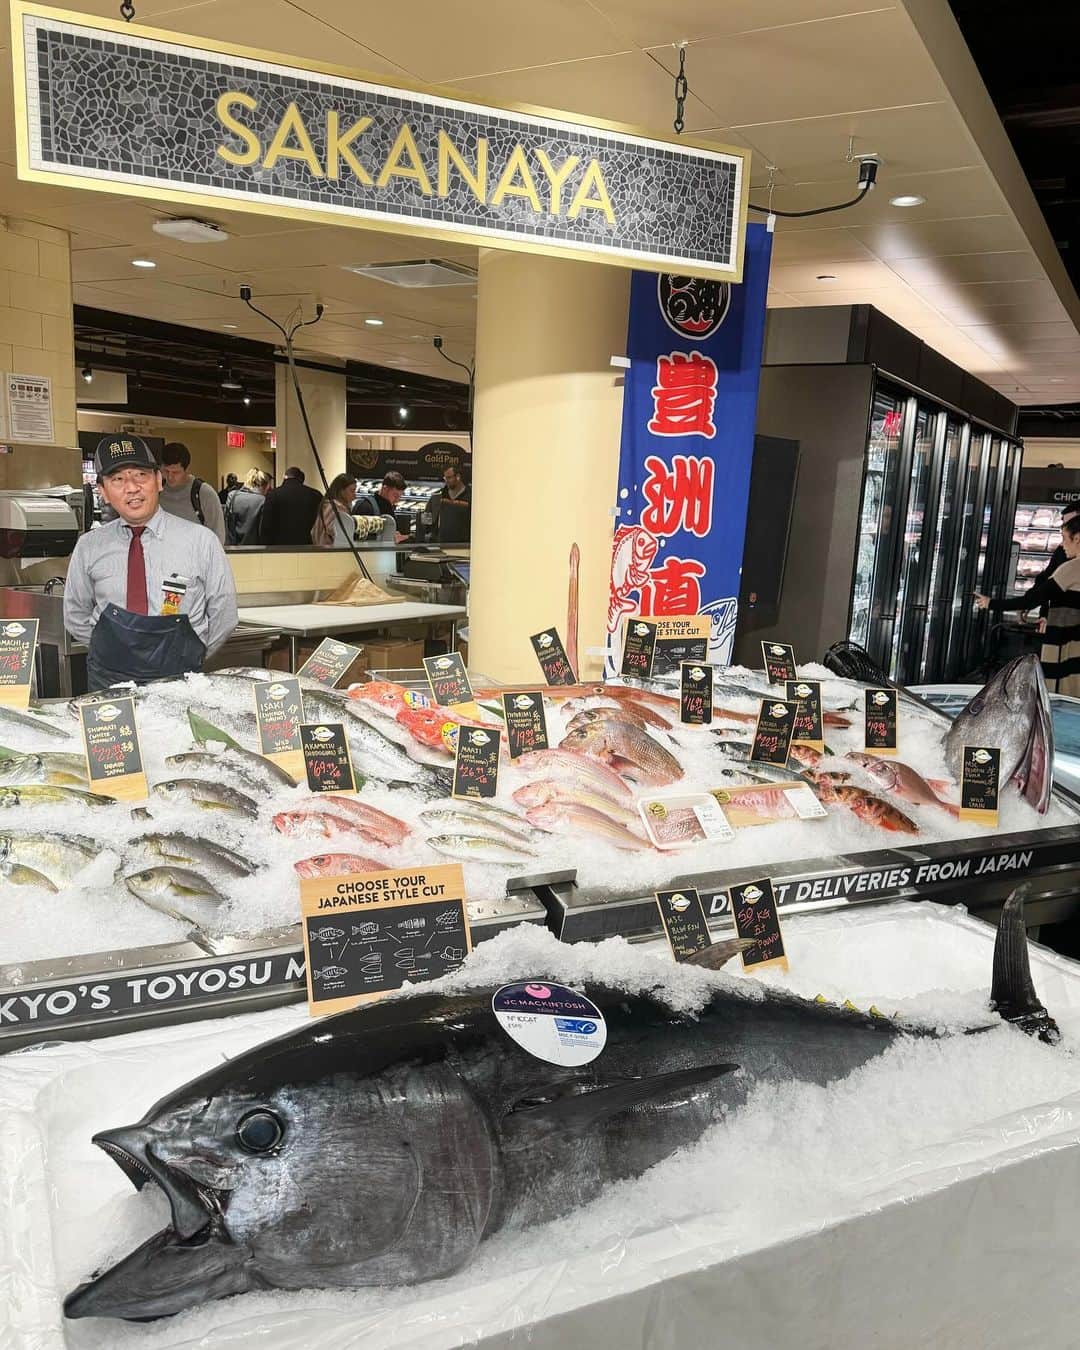 岡田育のインスタグラム：「Ladies and gentlemen, we got Wegmans @wegmans in Astor Place #wegmansmanhattan #wegmansastorplace !! Our biggest surprise is that #Sakanaya (the fish store) directly from Toyosu Fish Market Tokyo. Every neighbor says it's much much better than Kmart but I feel nostalgic a little, for their appearance in Kondoh Akino’s essay comic @kondoh_akino (pic4). But it's much better than Kmart (I say twice). #lowermanhattan  . コロナ禍で贔屓の店がバタバタ潰れてしょんぼり続きだった我が街ですが、このたび最寄駅直上にマンハッタン初の巨大な #ウェグマンズ ができました。ヤバいヤバいとは聞いていたがケーキや惣菜や他の生鮮食品はさておき、まさか #豊洲市場 から本鮪が直送されてくるとは想像の斜め上である……実質デパ地下ですね。それにしても道行くご近所さんたちみんな同じ紙袋提げて「あの鄙びたしょぼいKmartよりずっといい」「ここがあのゾンビが出そうな閑古鳥のKmartだったなんて信じられない」と口々にKmartの懐かし自虐dis談義（with love）をしててウケる。そう、日本の皆様にはおなじみ、 #近藤聡乃 さんの『 #ニューヨークで考え中 』冒頭に登場した、あのタマゴ色のタオルのKmart跡地が、華麗に大変身なのであるよ！」